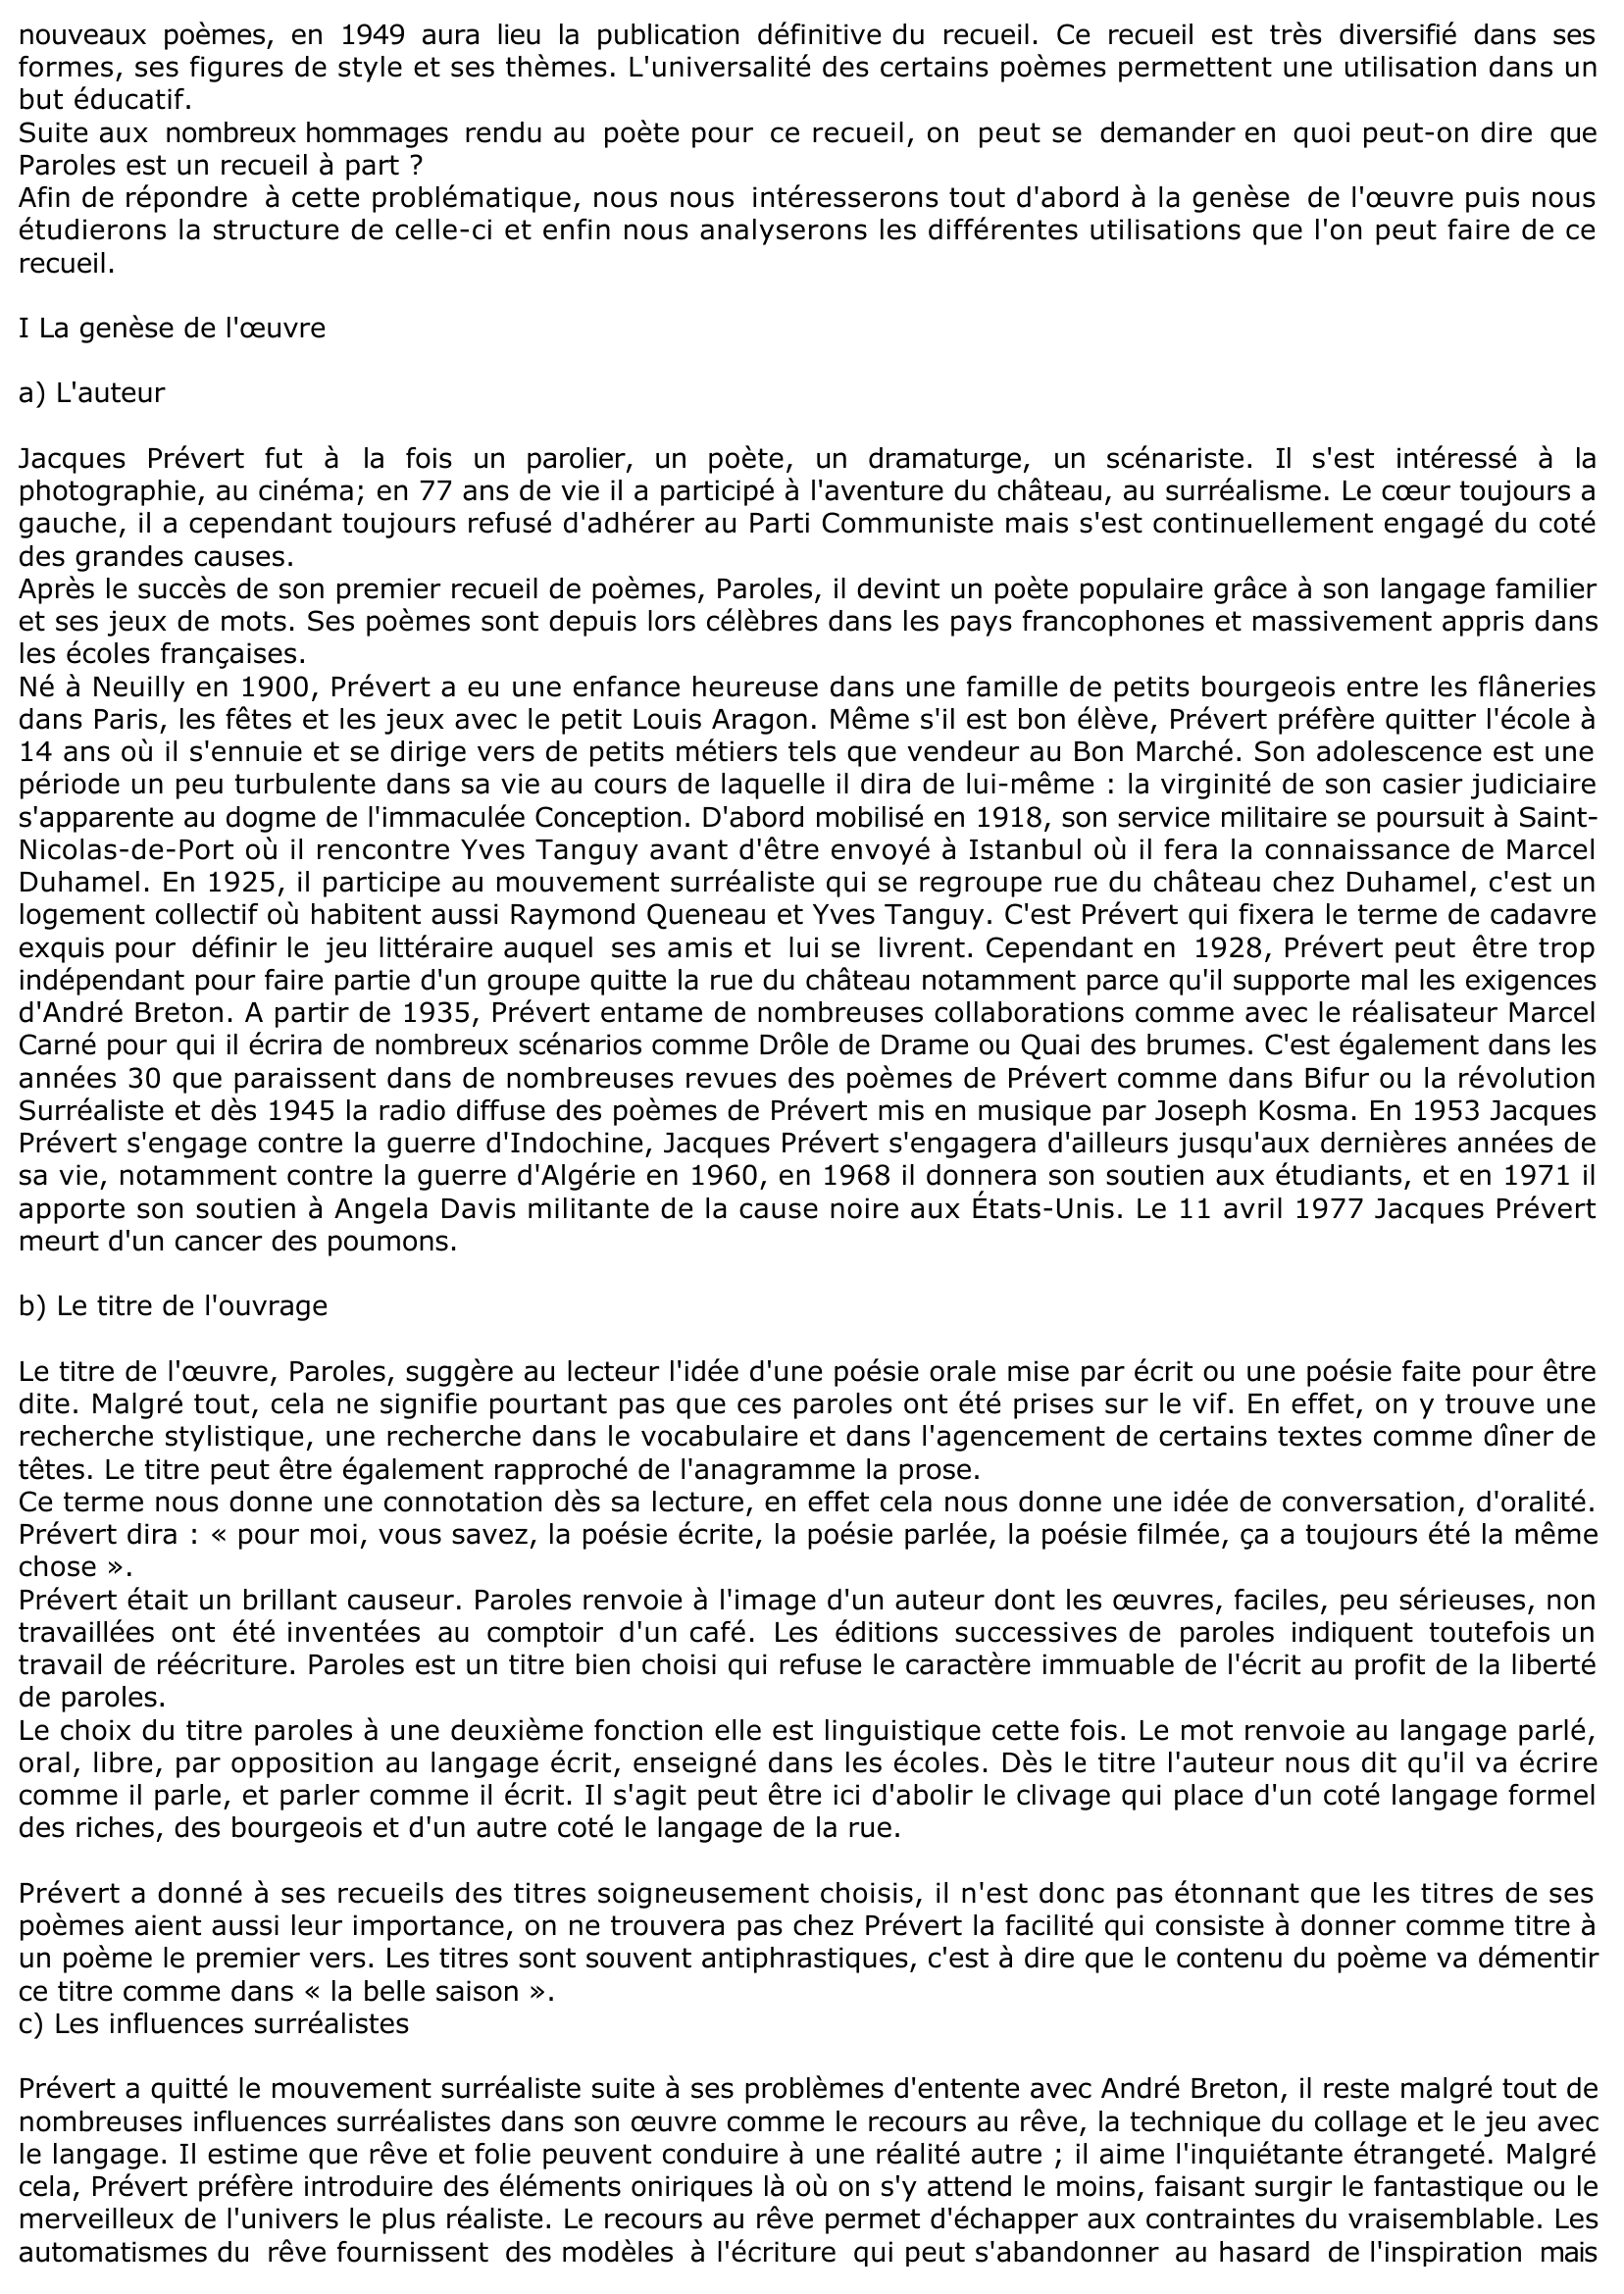 Prévisualisation du document FICHE DE LECTURE: PAROLES DE JACQUES PRÉVERT